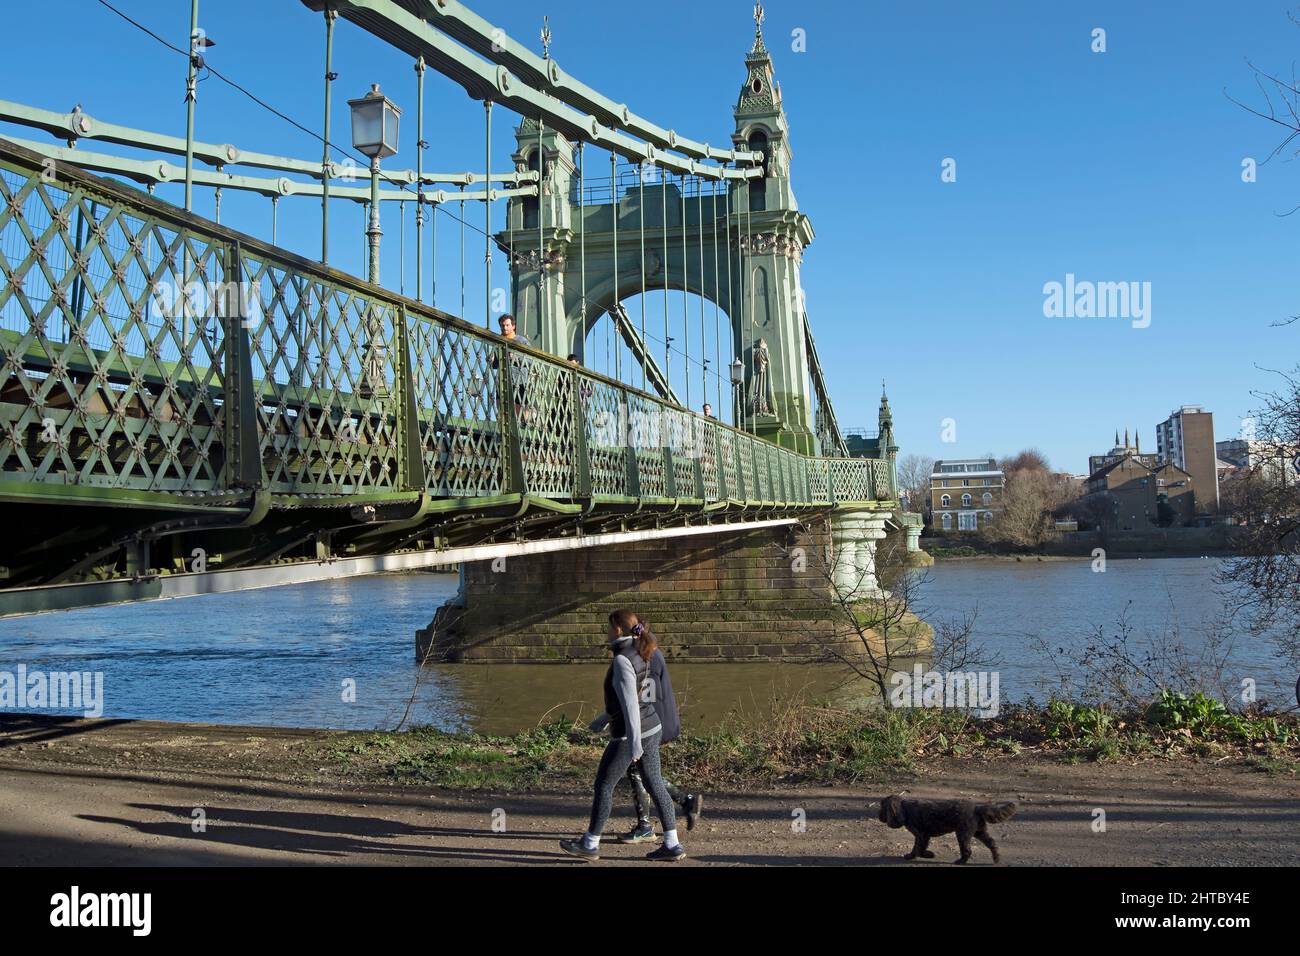 sulle rive del tamigi a barnes, due donne camminano un cane che sta per passare sotto il ponte hammersmith, londra, inghilterra Foto Stock